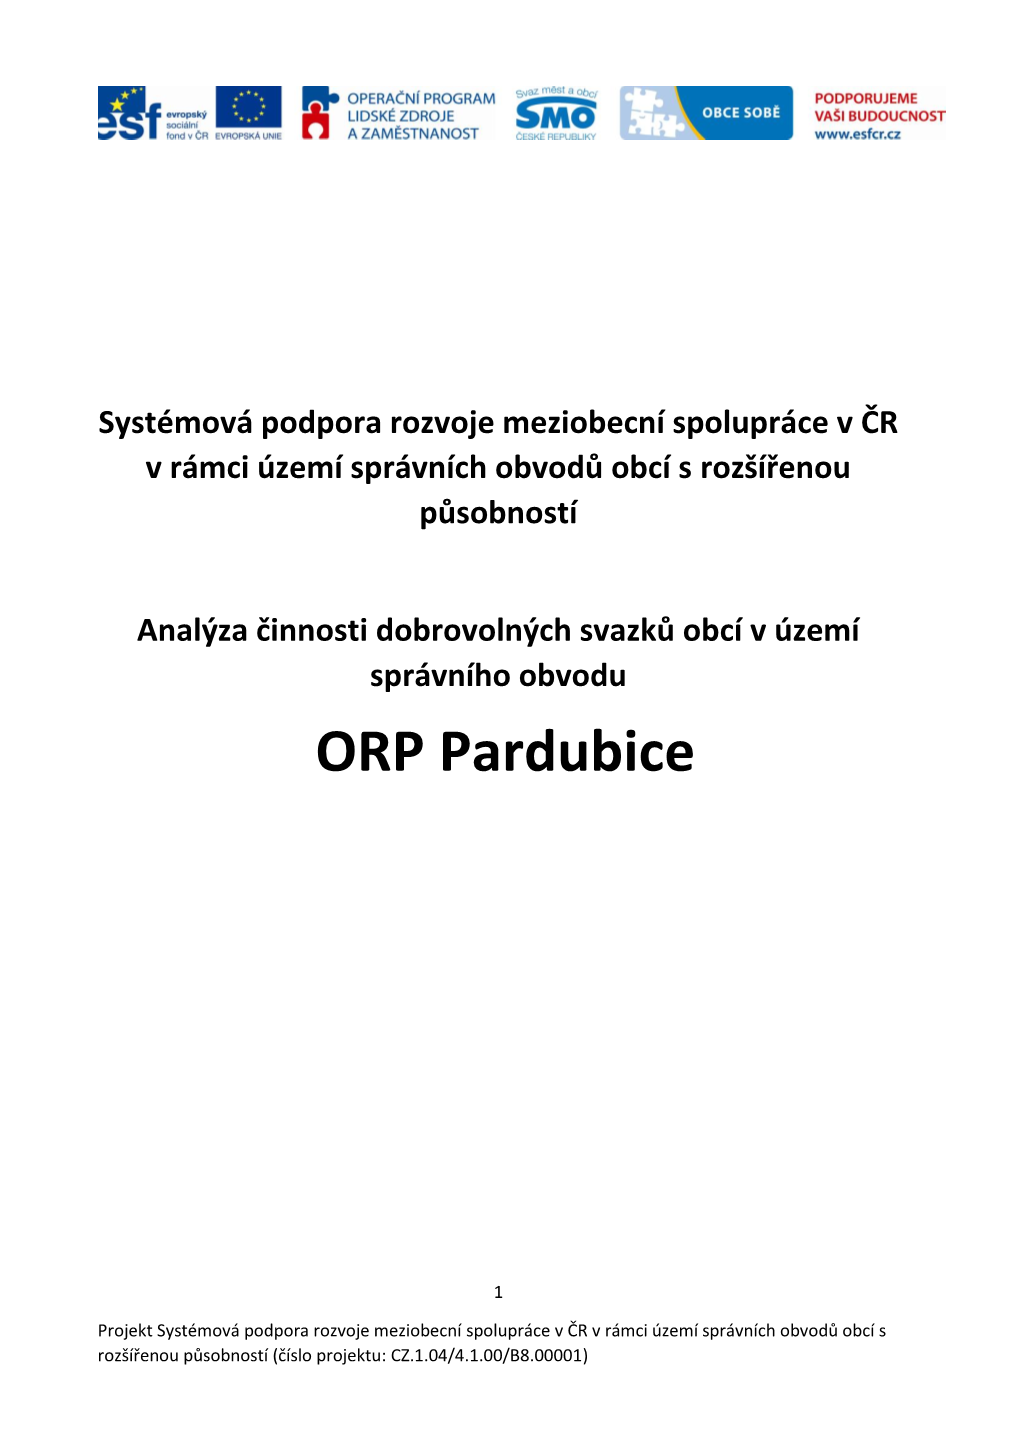 ORP Pardubice